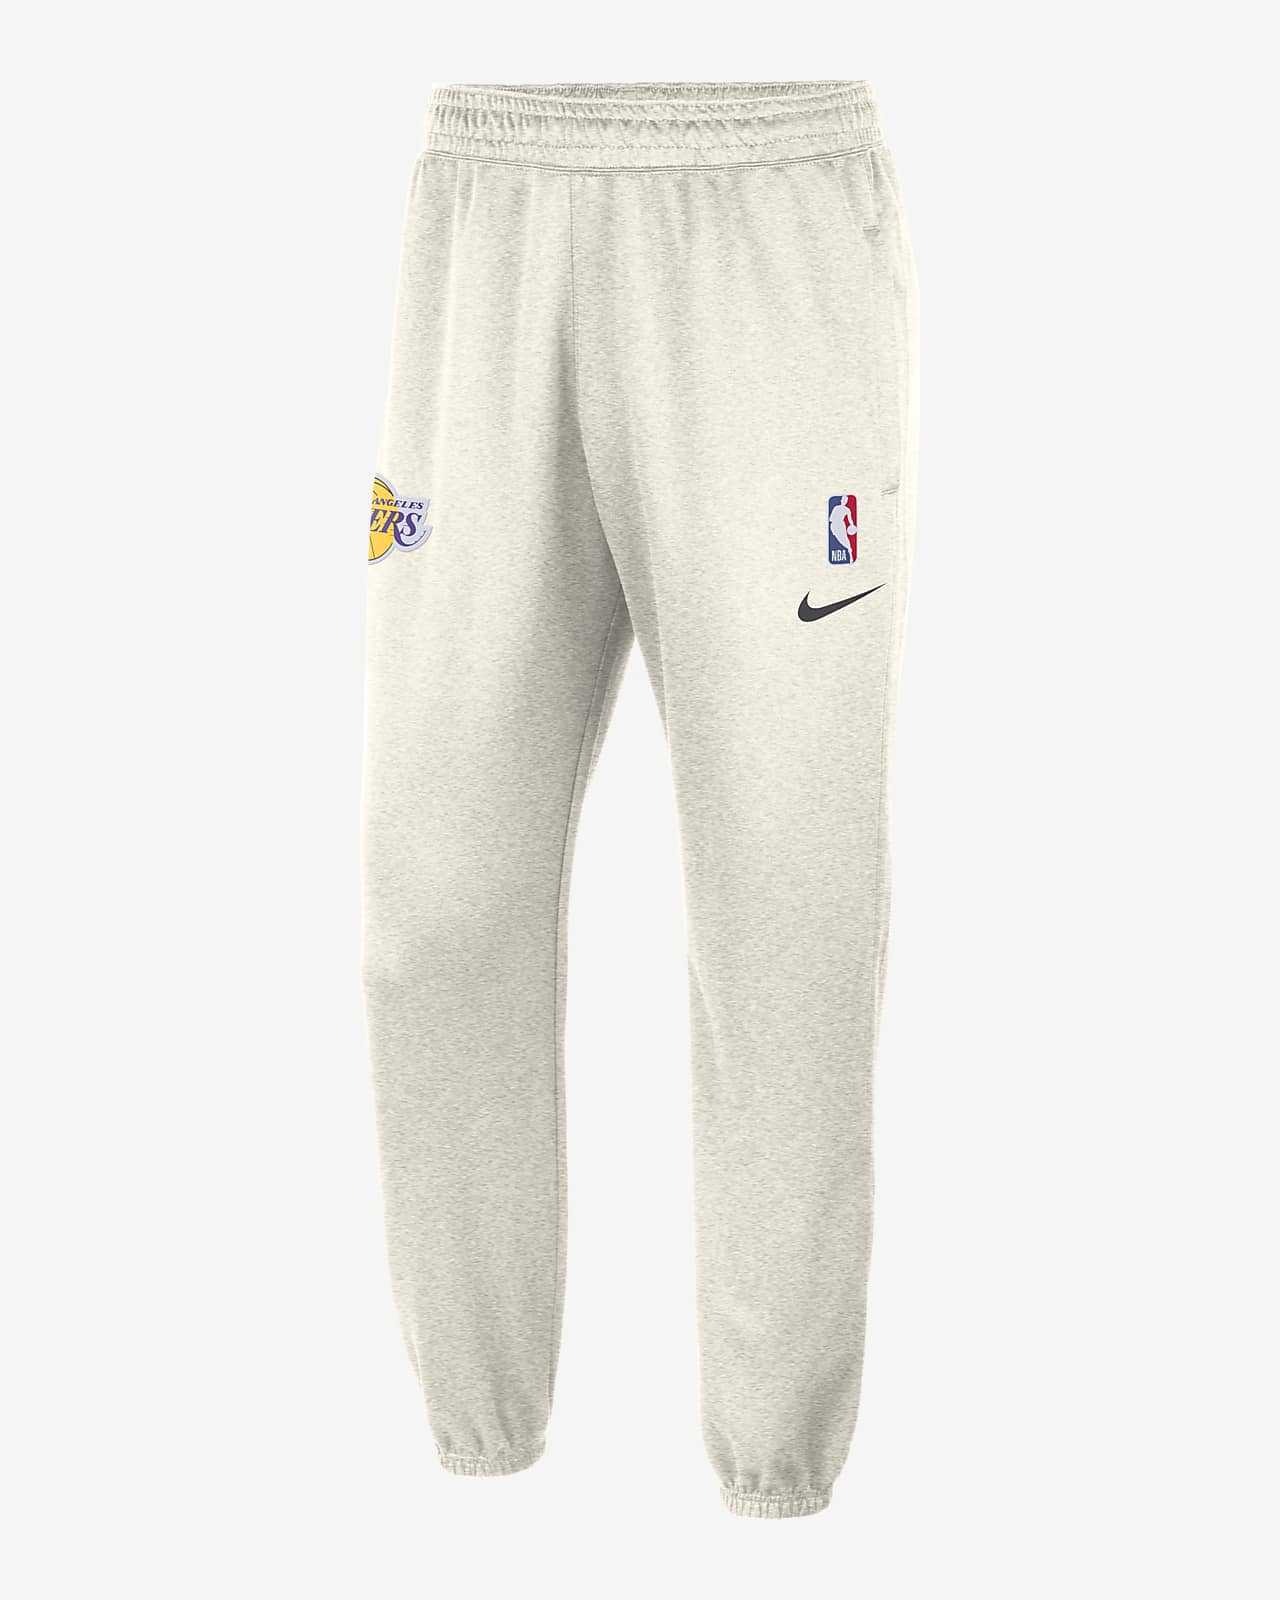 Nike+NBA+Los+Angeles+Lakers+Warm+Up+Detachable+Pants+PE+Men%E2%80